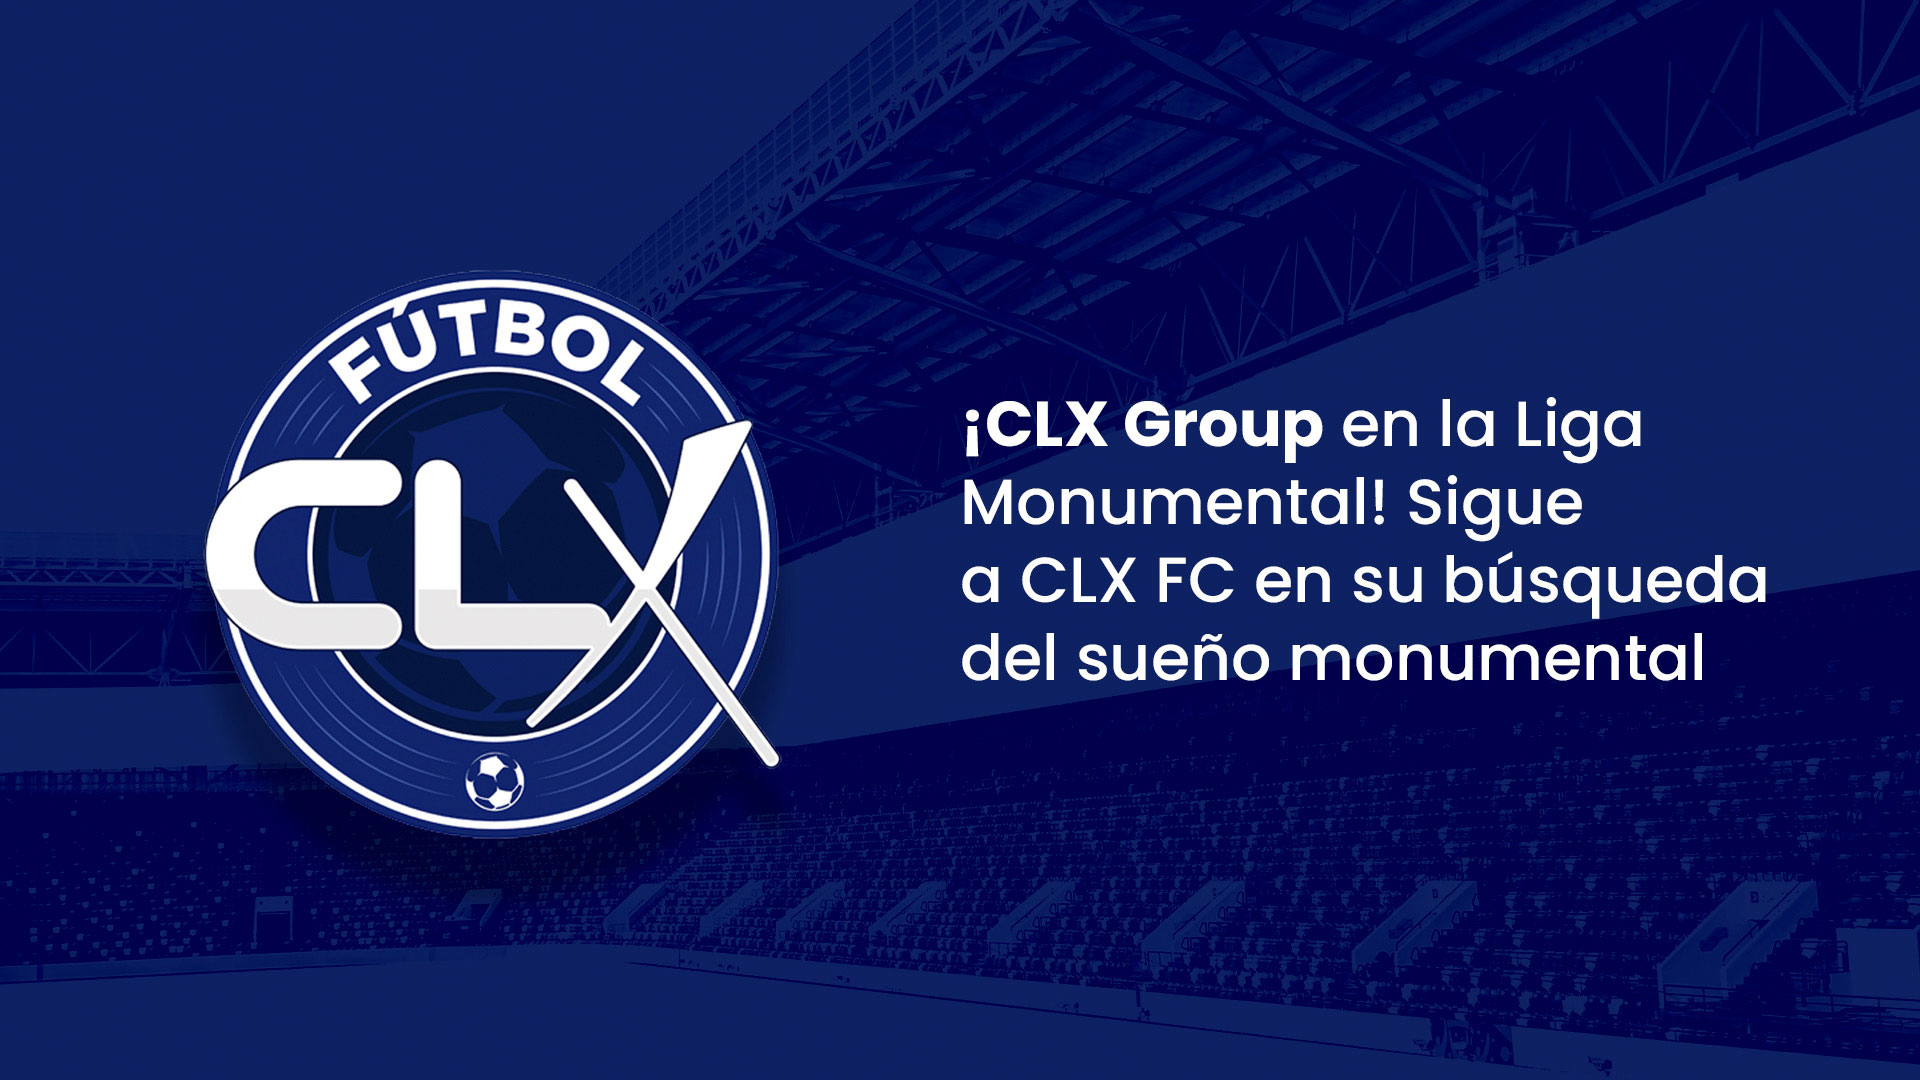 ¡CLX Group en la Liga Monumental! Sigue a CLX FC en su búsqueda del sueño monumental